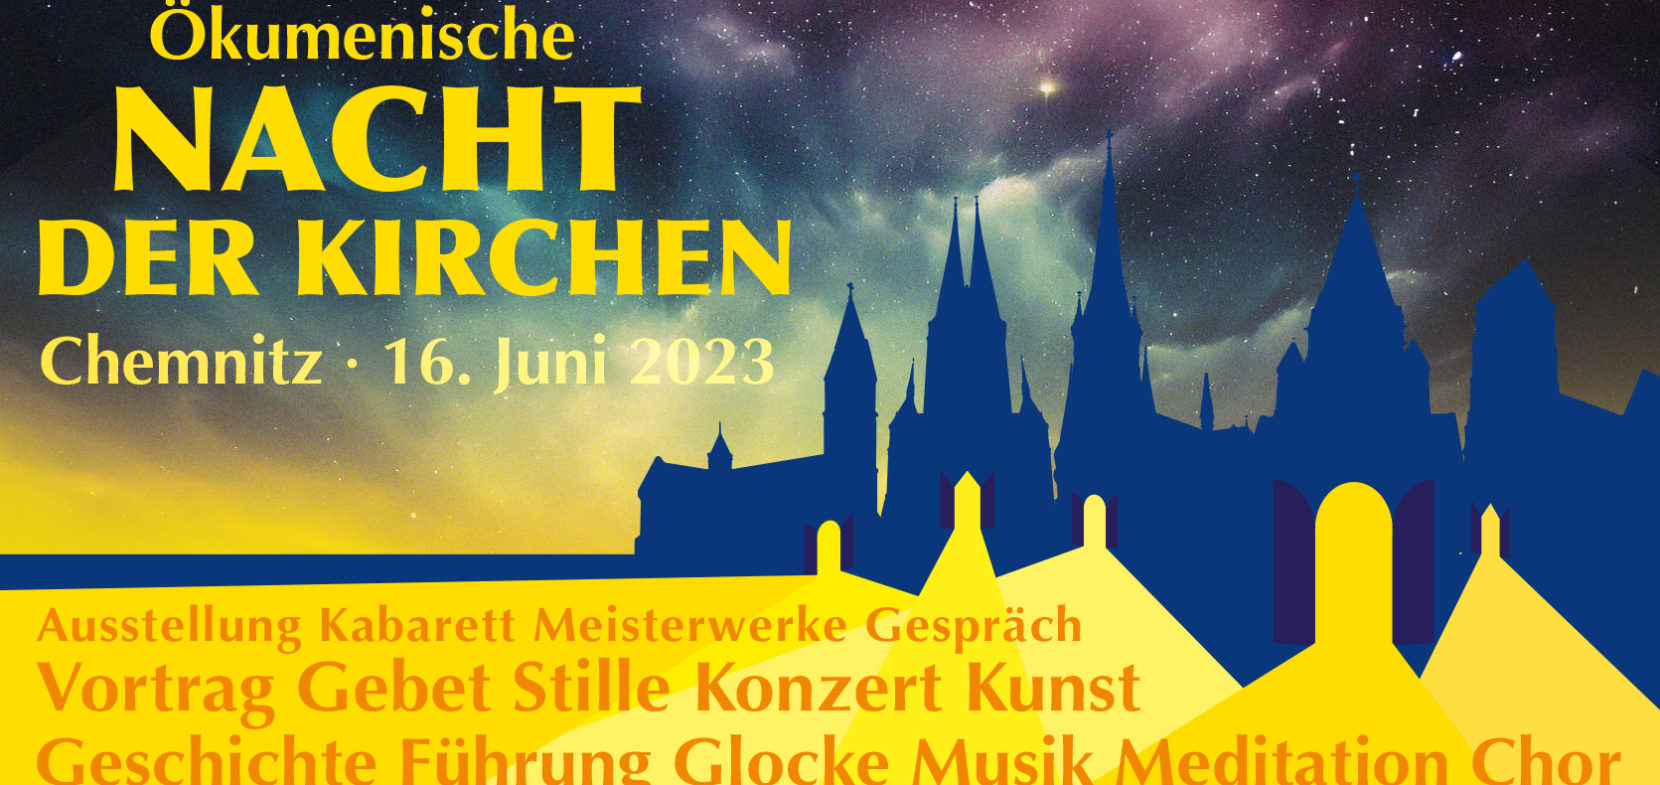 Nacht der Kirchen 2023